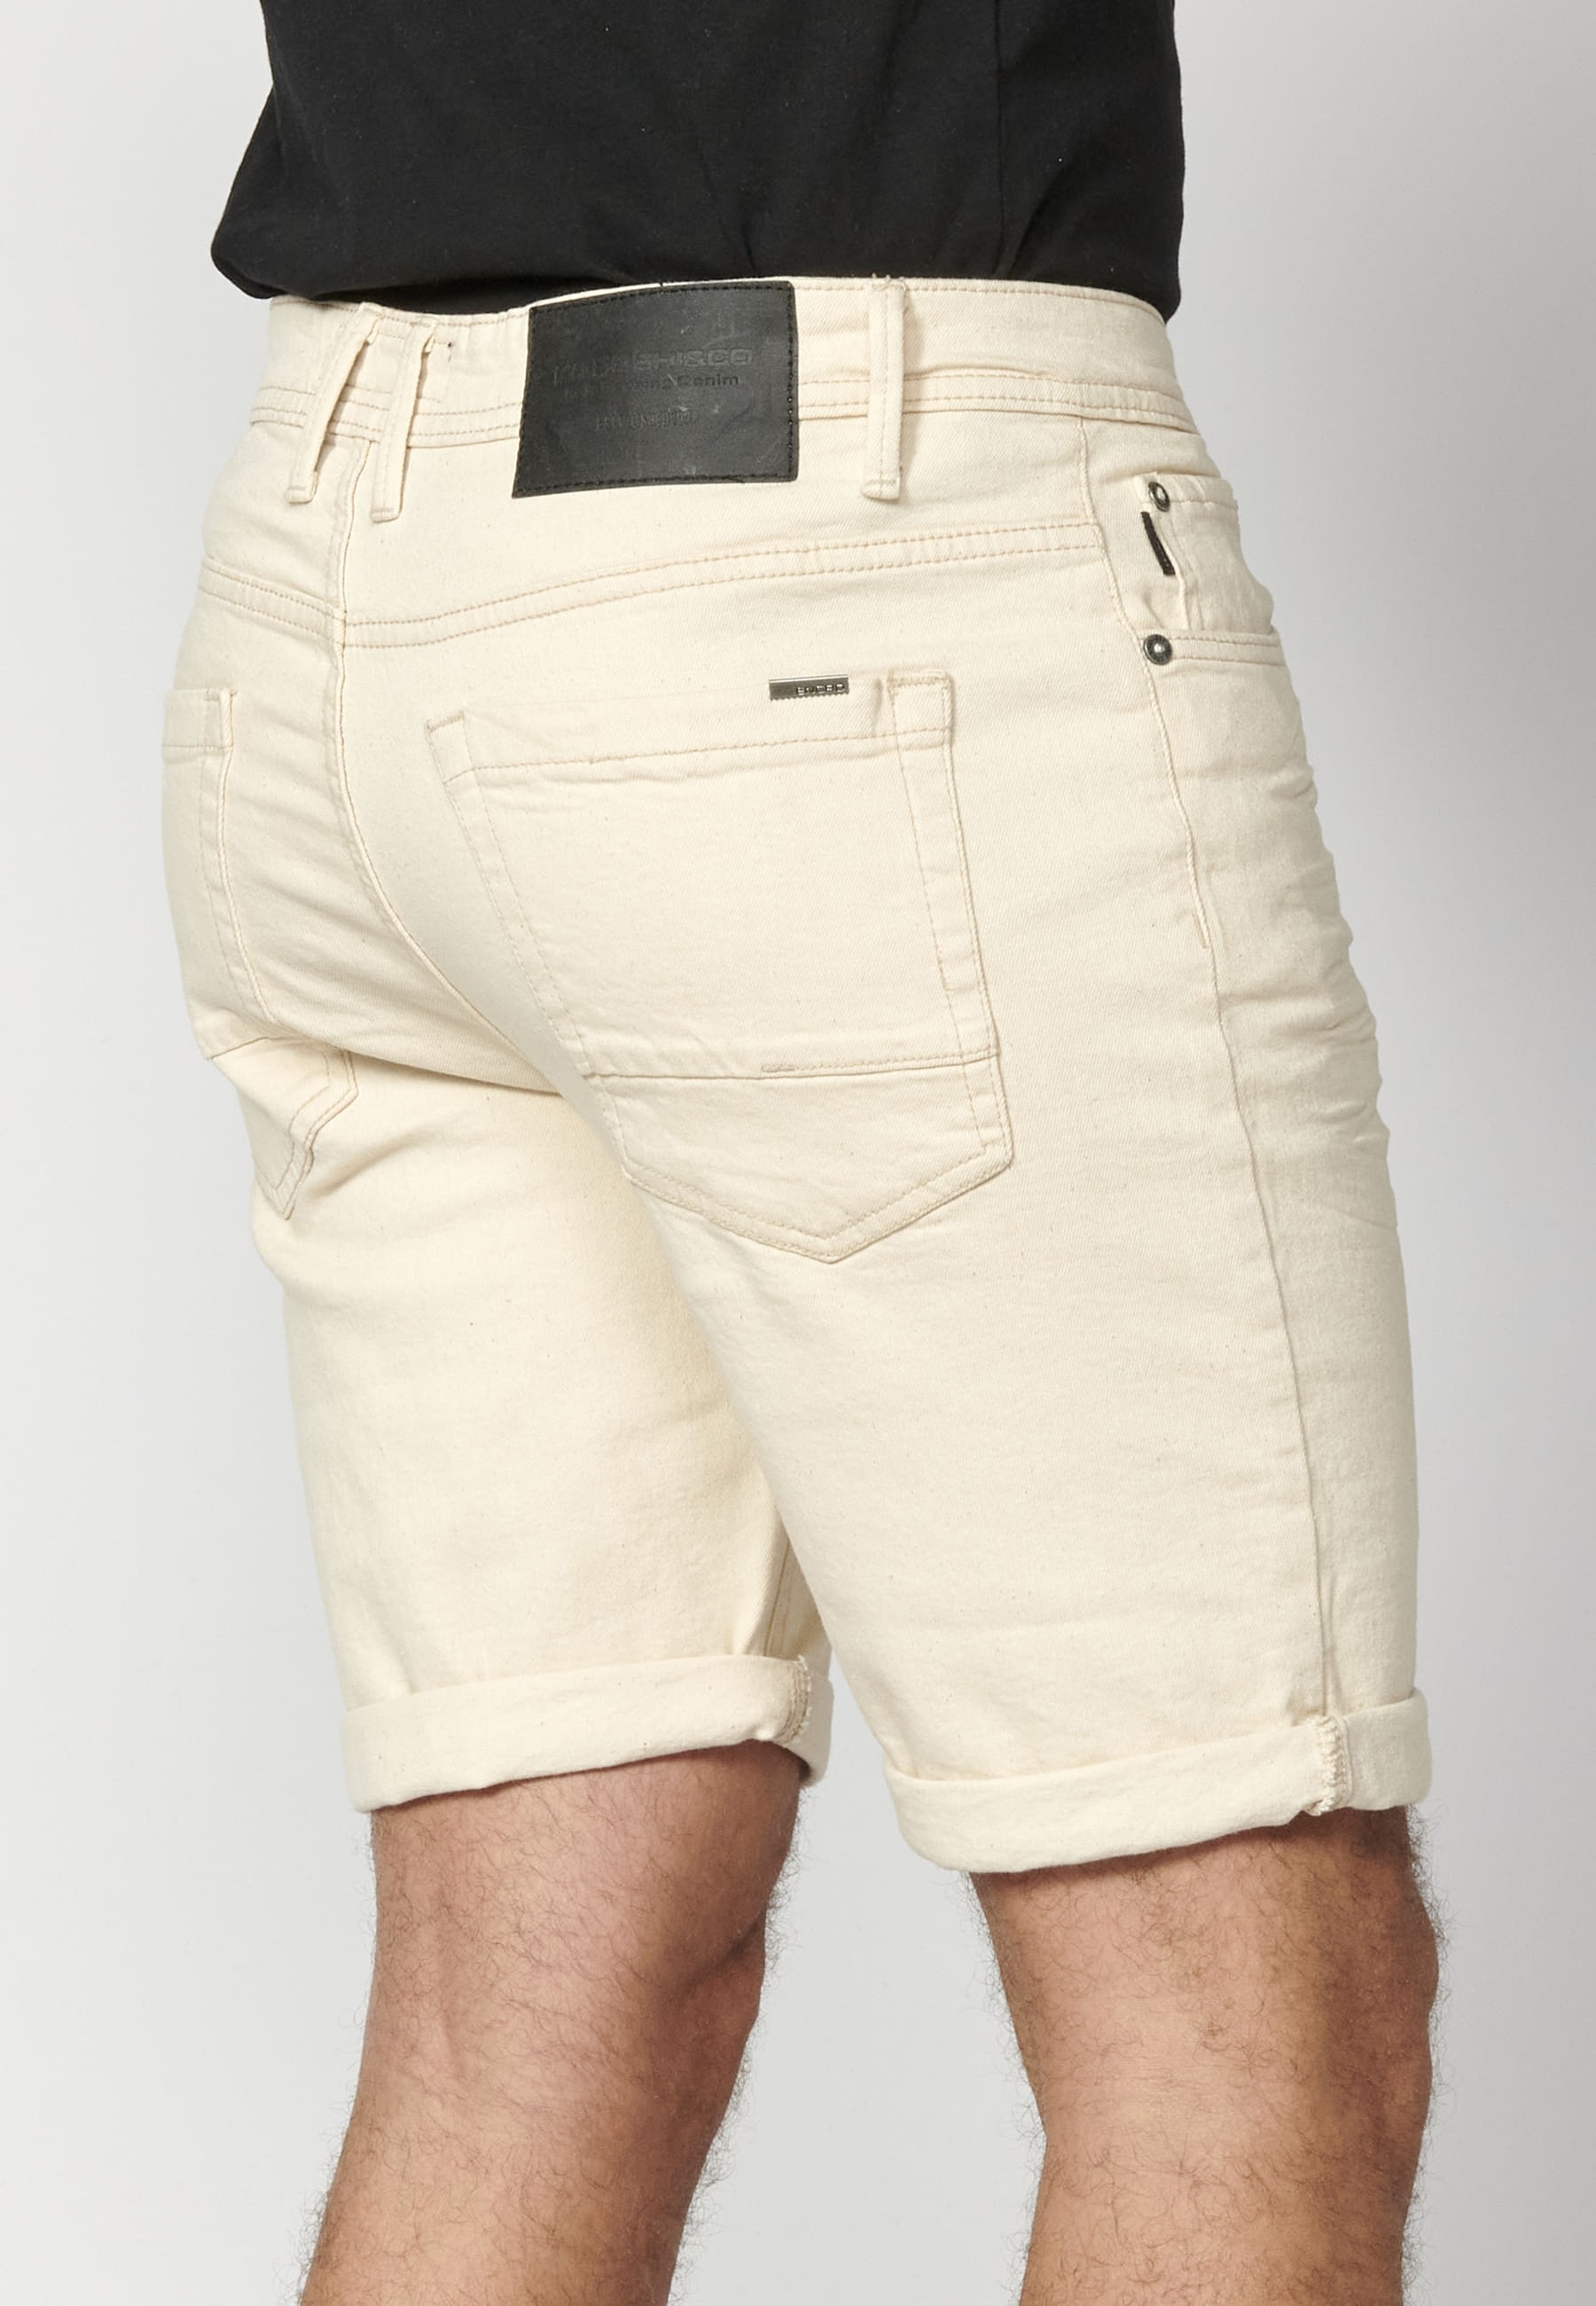 Pantalón corto Bermuda Regular Fit color Crudo para Hombre